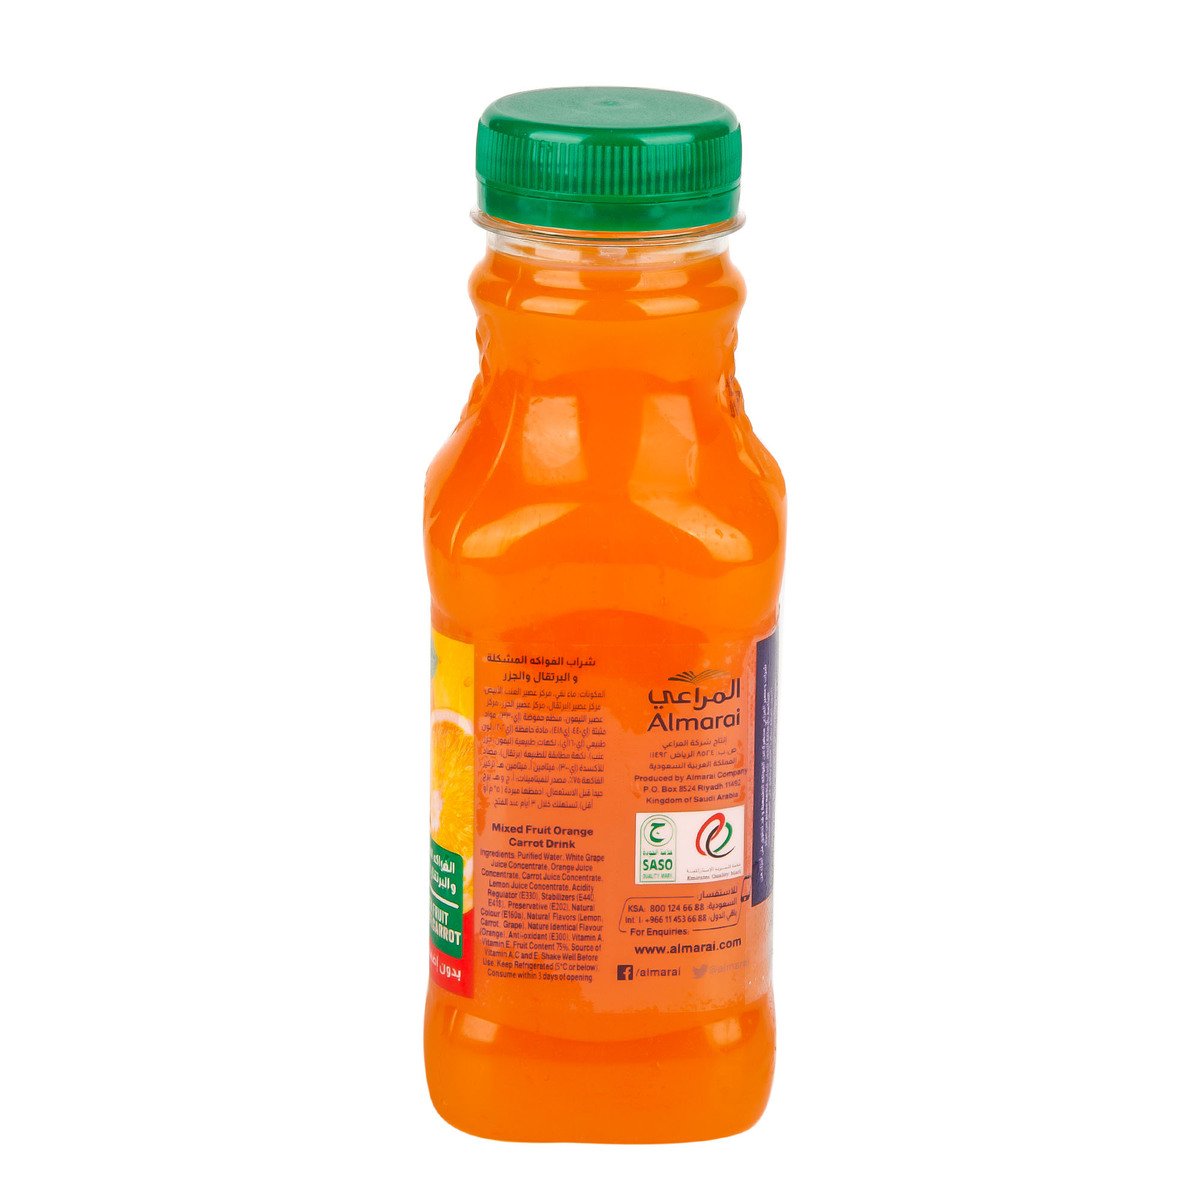 Almarai Mixed Fruit Orange Carrot Juice 300 ml